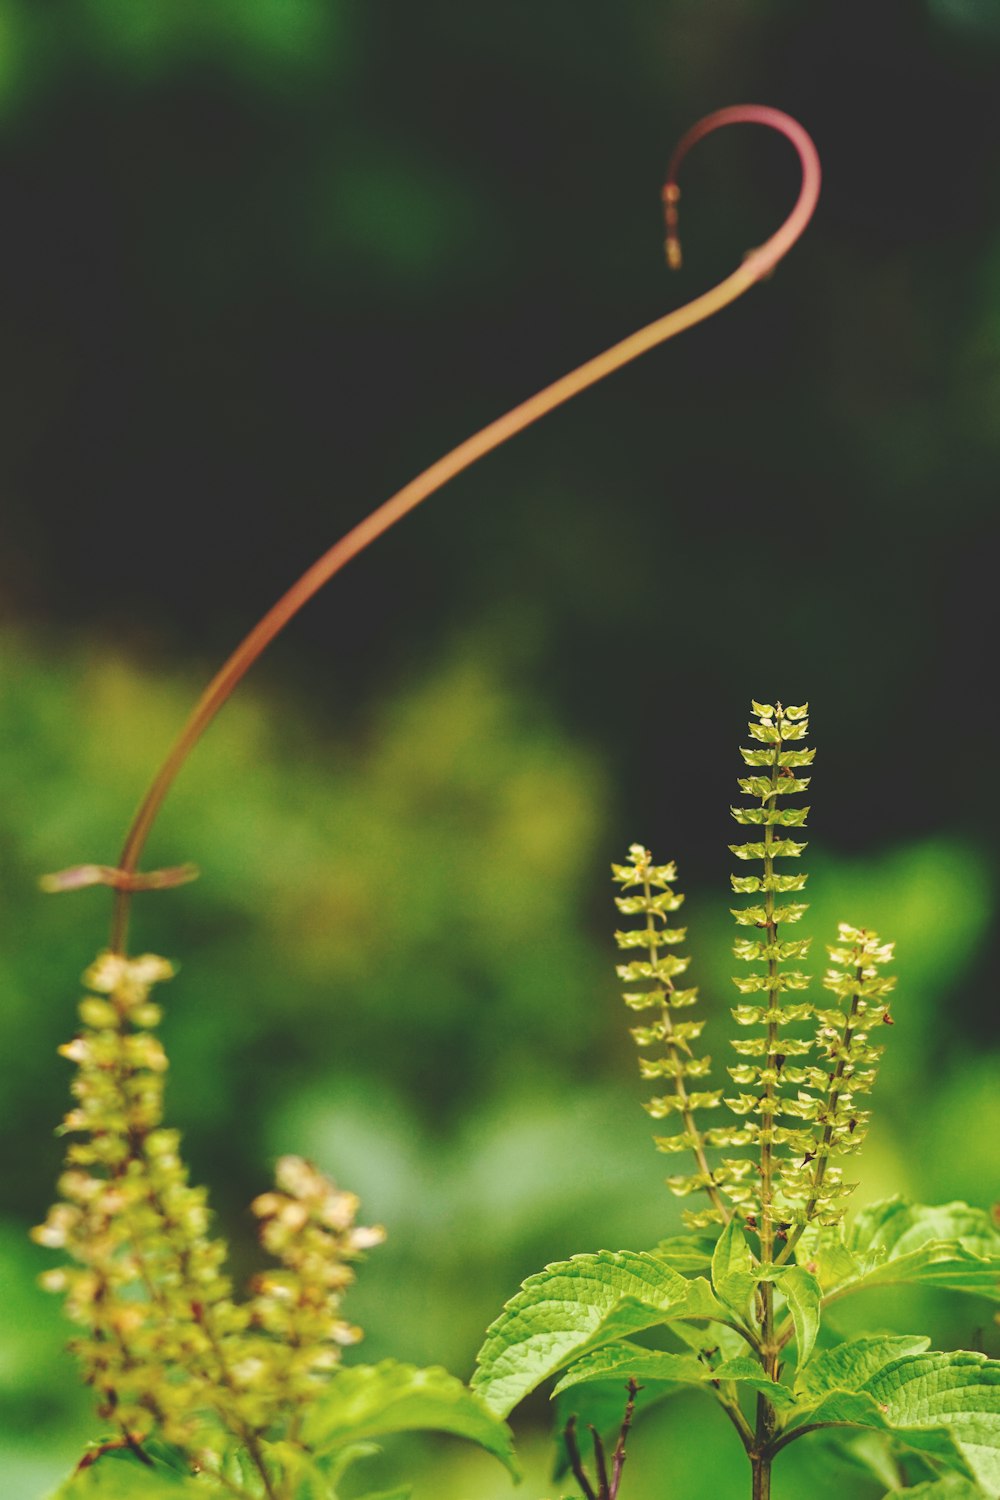 Plantas de hojas verdes en fotografía de enfoque superficial